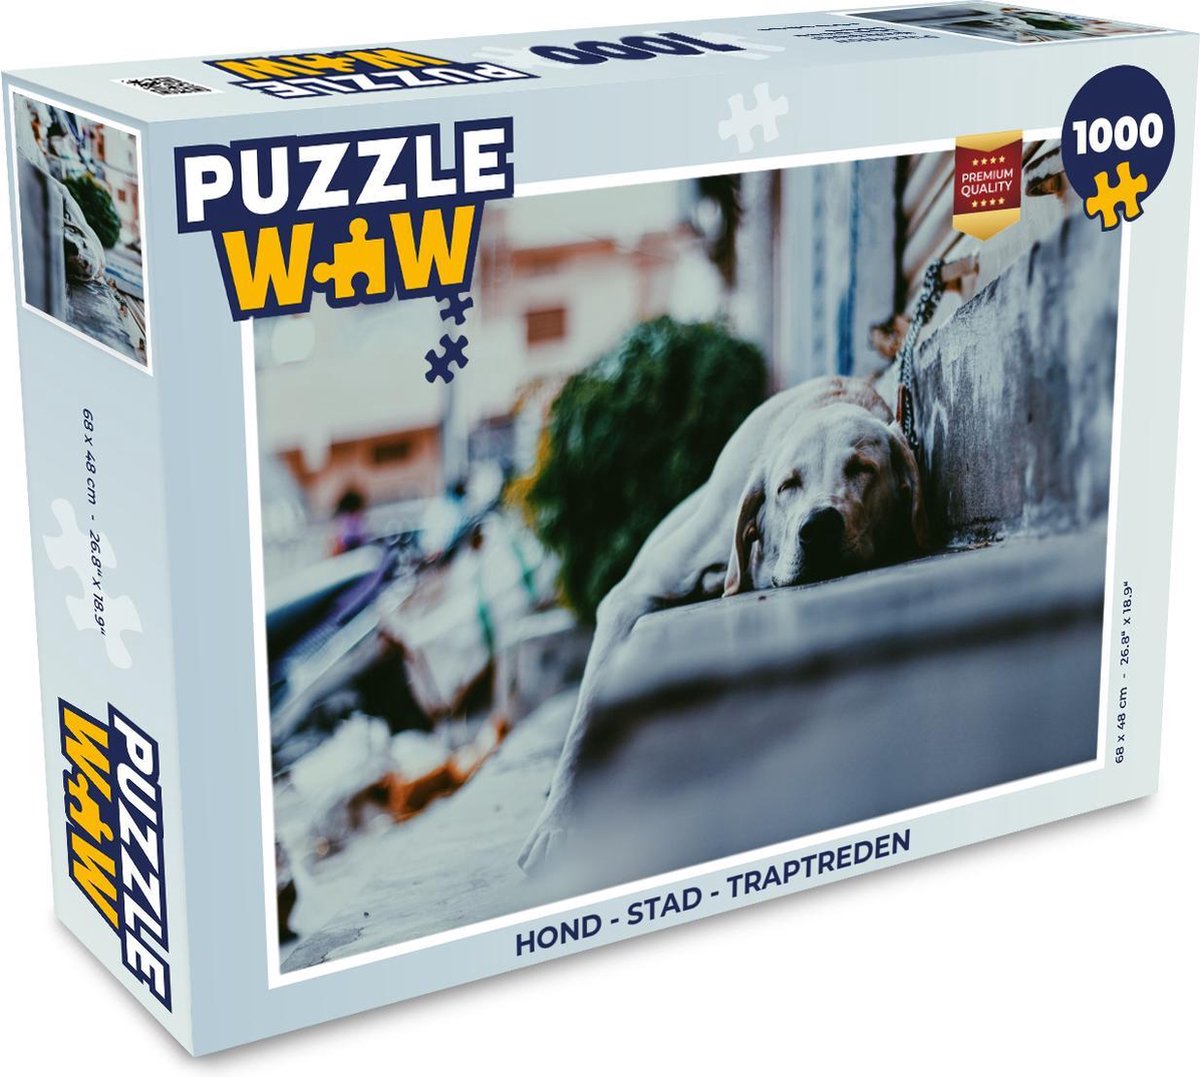 Afbeelding van product PuzzleWow  Puzzel Hond - Stad - Traptreden - Legpuzzel - Puzzel 1000 stukjes volwassenen